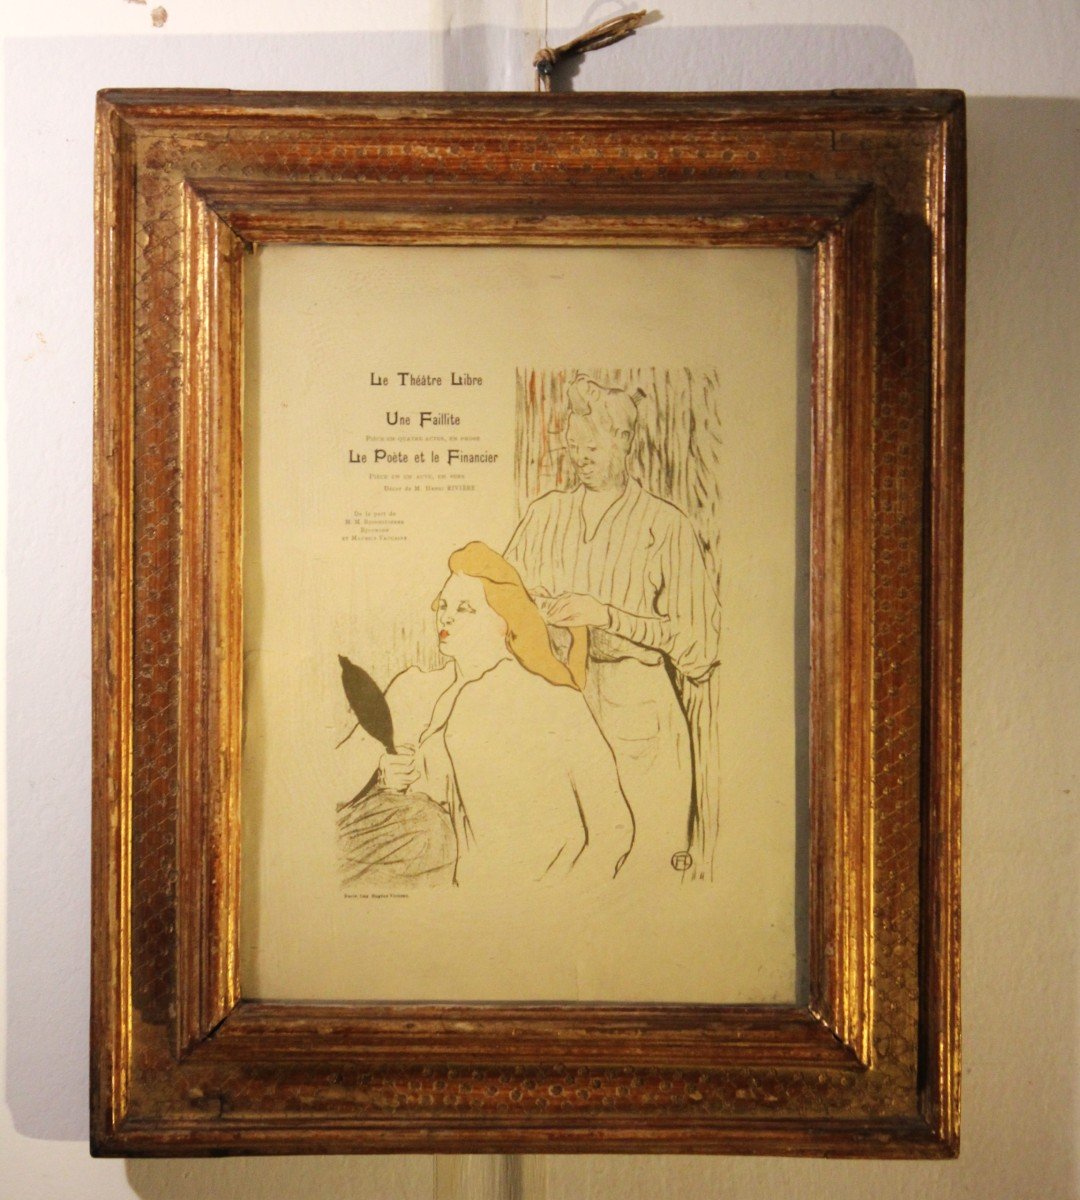  Henri de Toulouse-Lautrec 1864-1901 | La toletta per "Le Théâtre Libre" (1893) Il parrucchiere